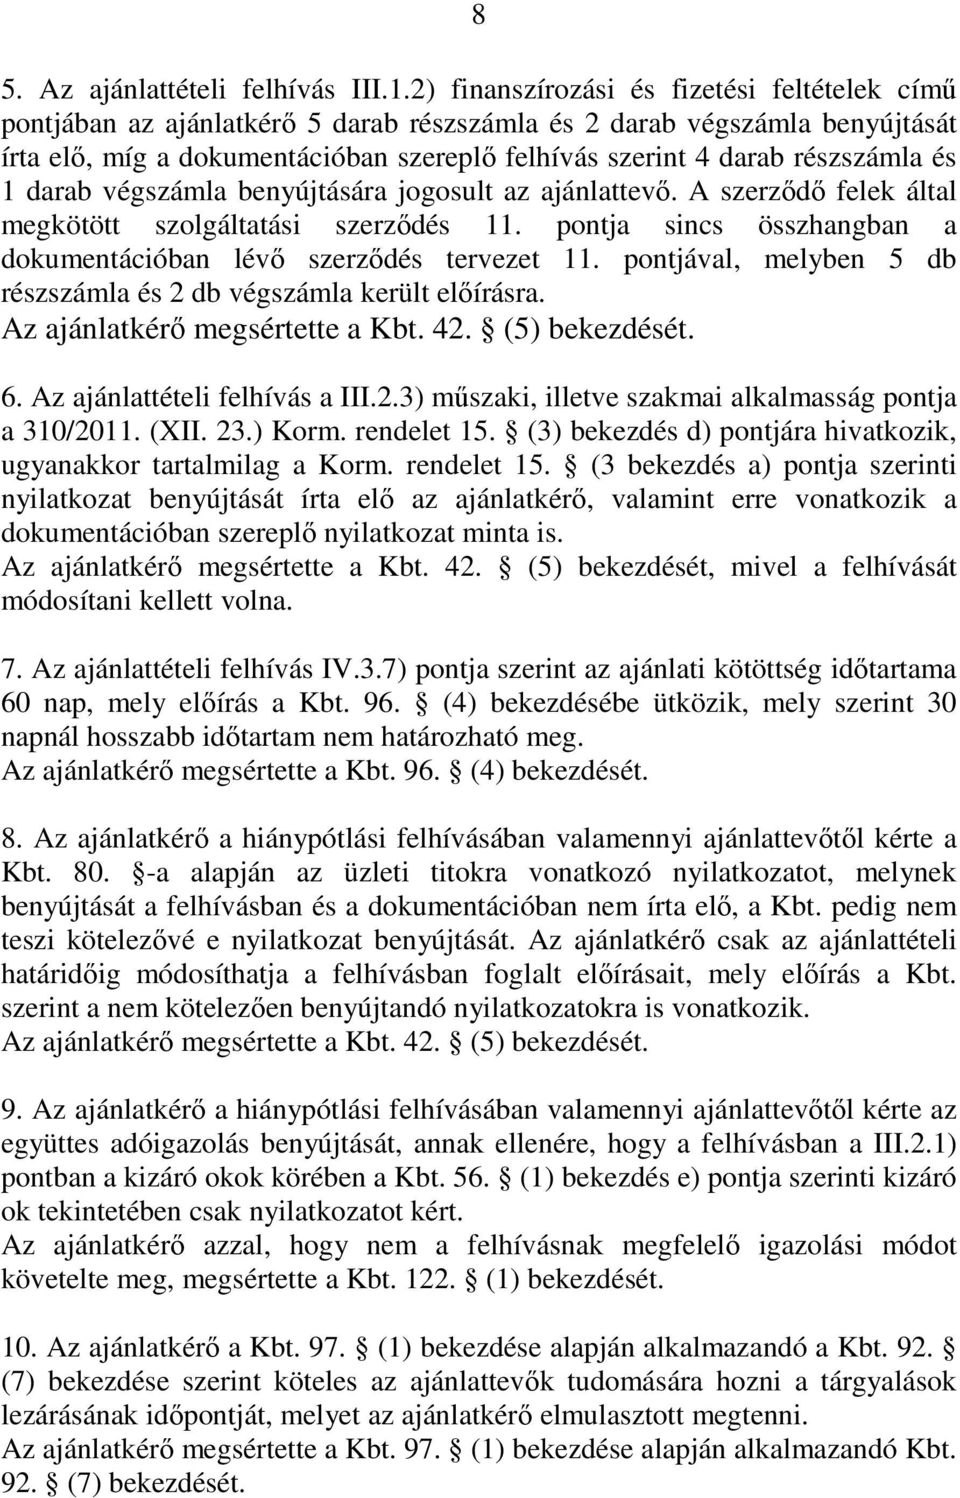 és 1 darab végszámla benyújtására jogosult az ajánlattevı. A szerzıdı felek által megkötött szolgáltatási szerzıdés 11. pontja sincs összhangban a dokumentációban lévı szerzıdés tervezet 11.